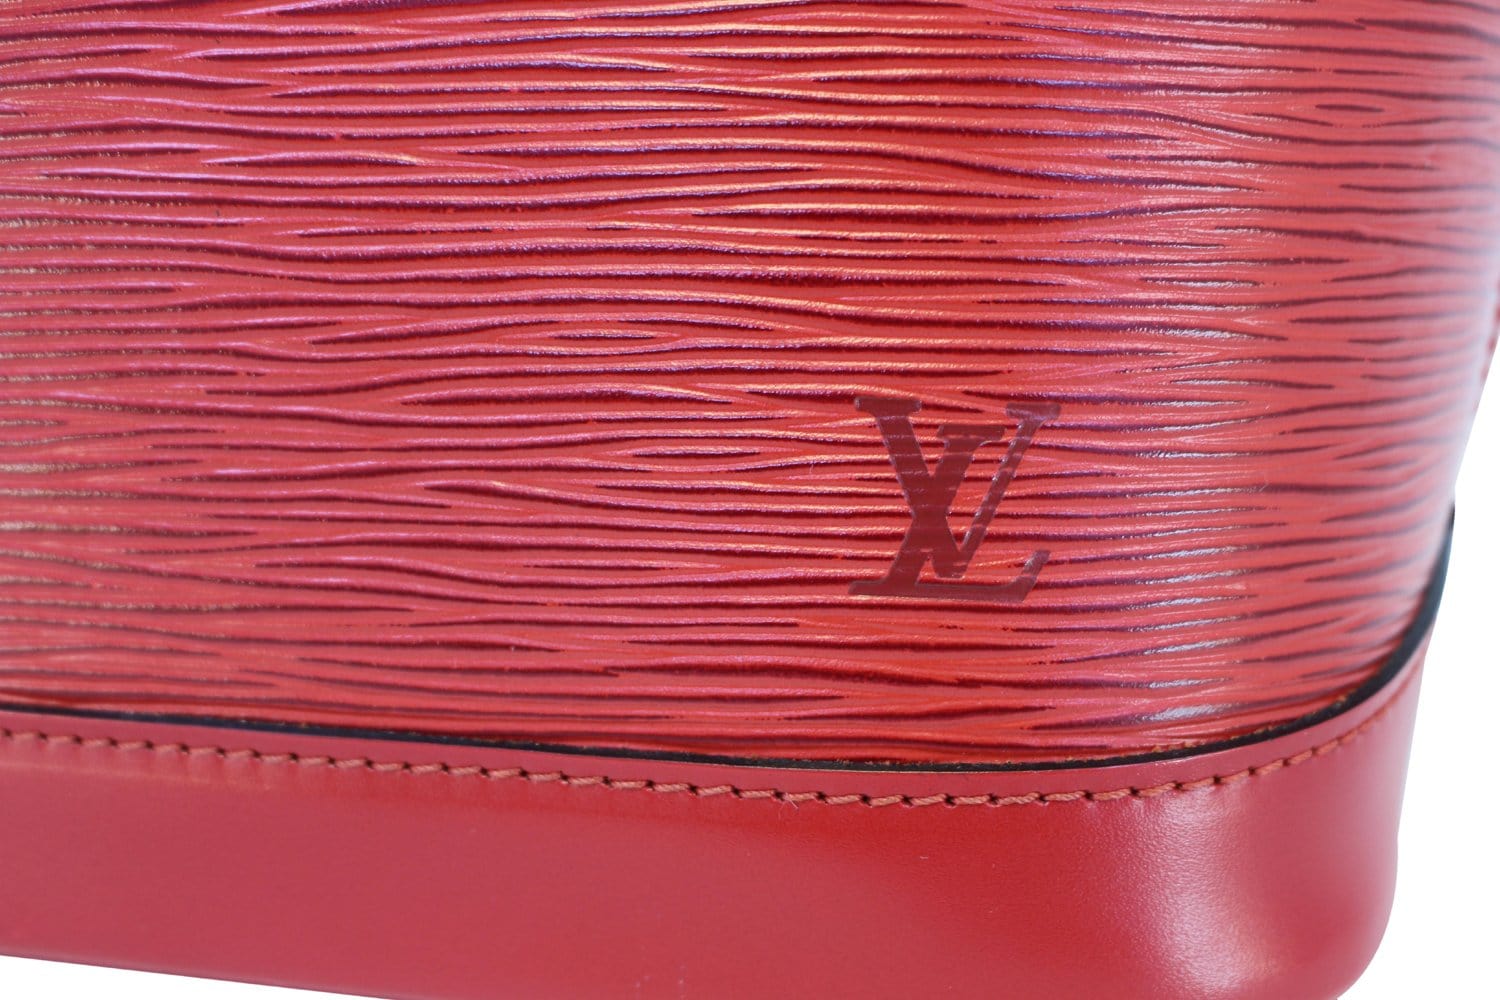 Louis Vuitton Monogram Alma GM Amarante Purple Vernice Leather Handbag Purse  for Sale in Tampa, FL - OfferUp